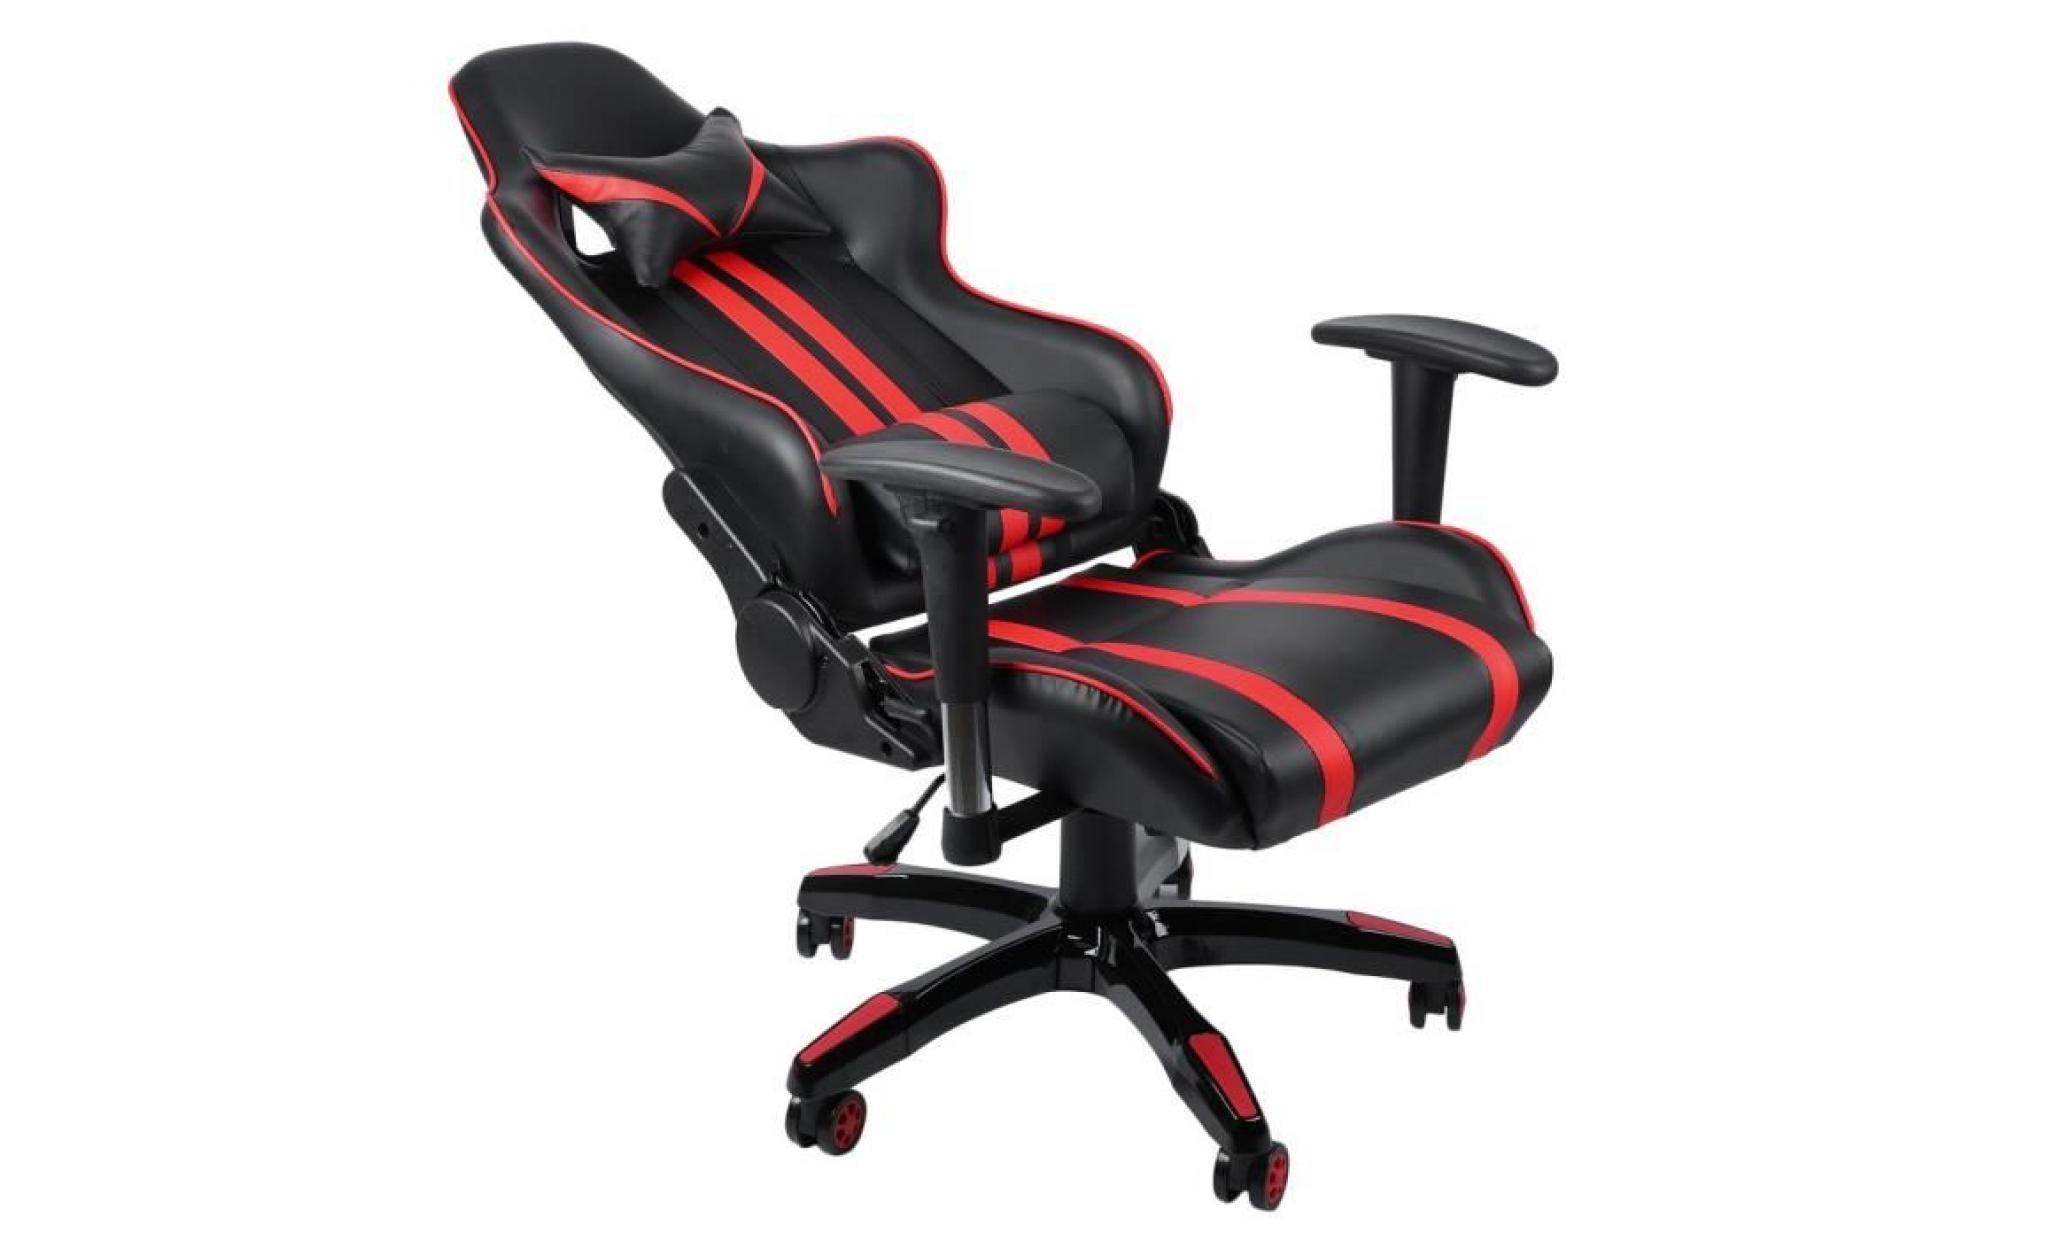 leshp® 2018 fauteuil joueur ergonomique chaise de jeu avec pivot d'appui tête à 150 ° mélange de couleurs cuir pu & métal pas cher